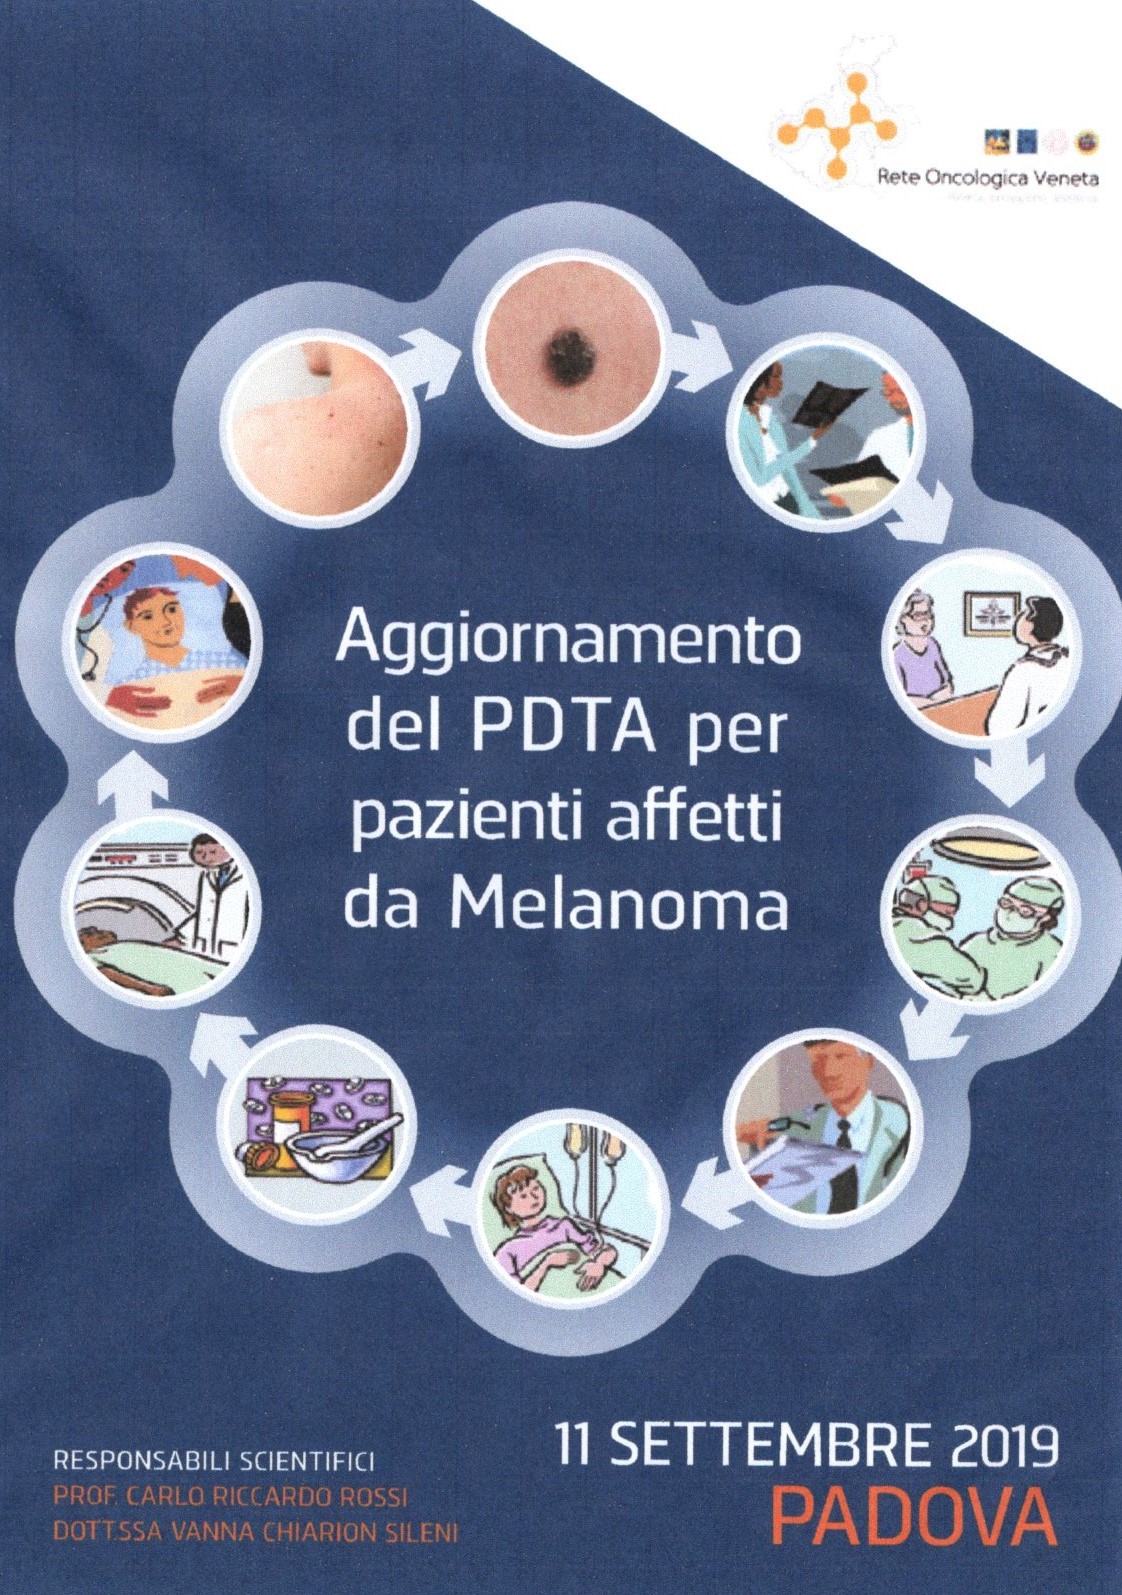 Aggiornamento del PDTA per pazienti affetti da Melanoma.